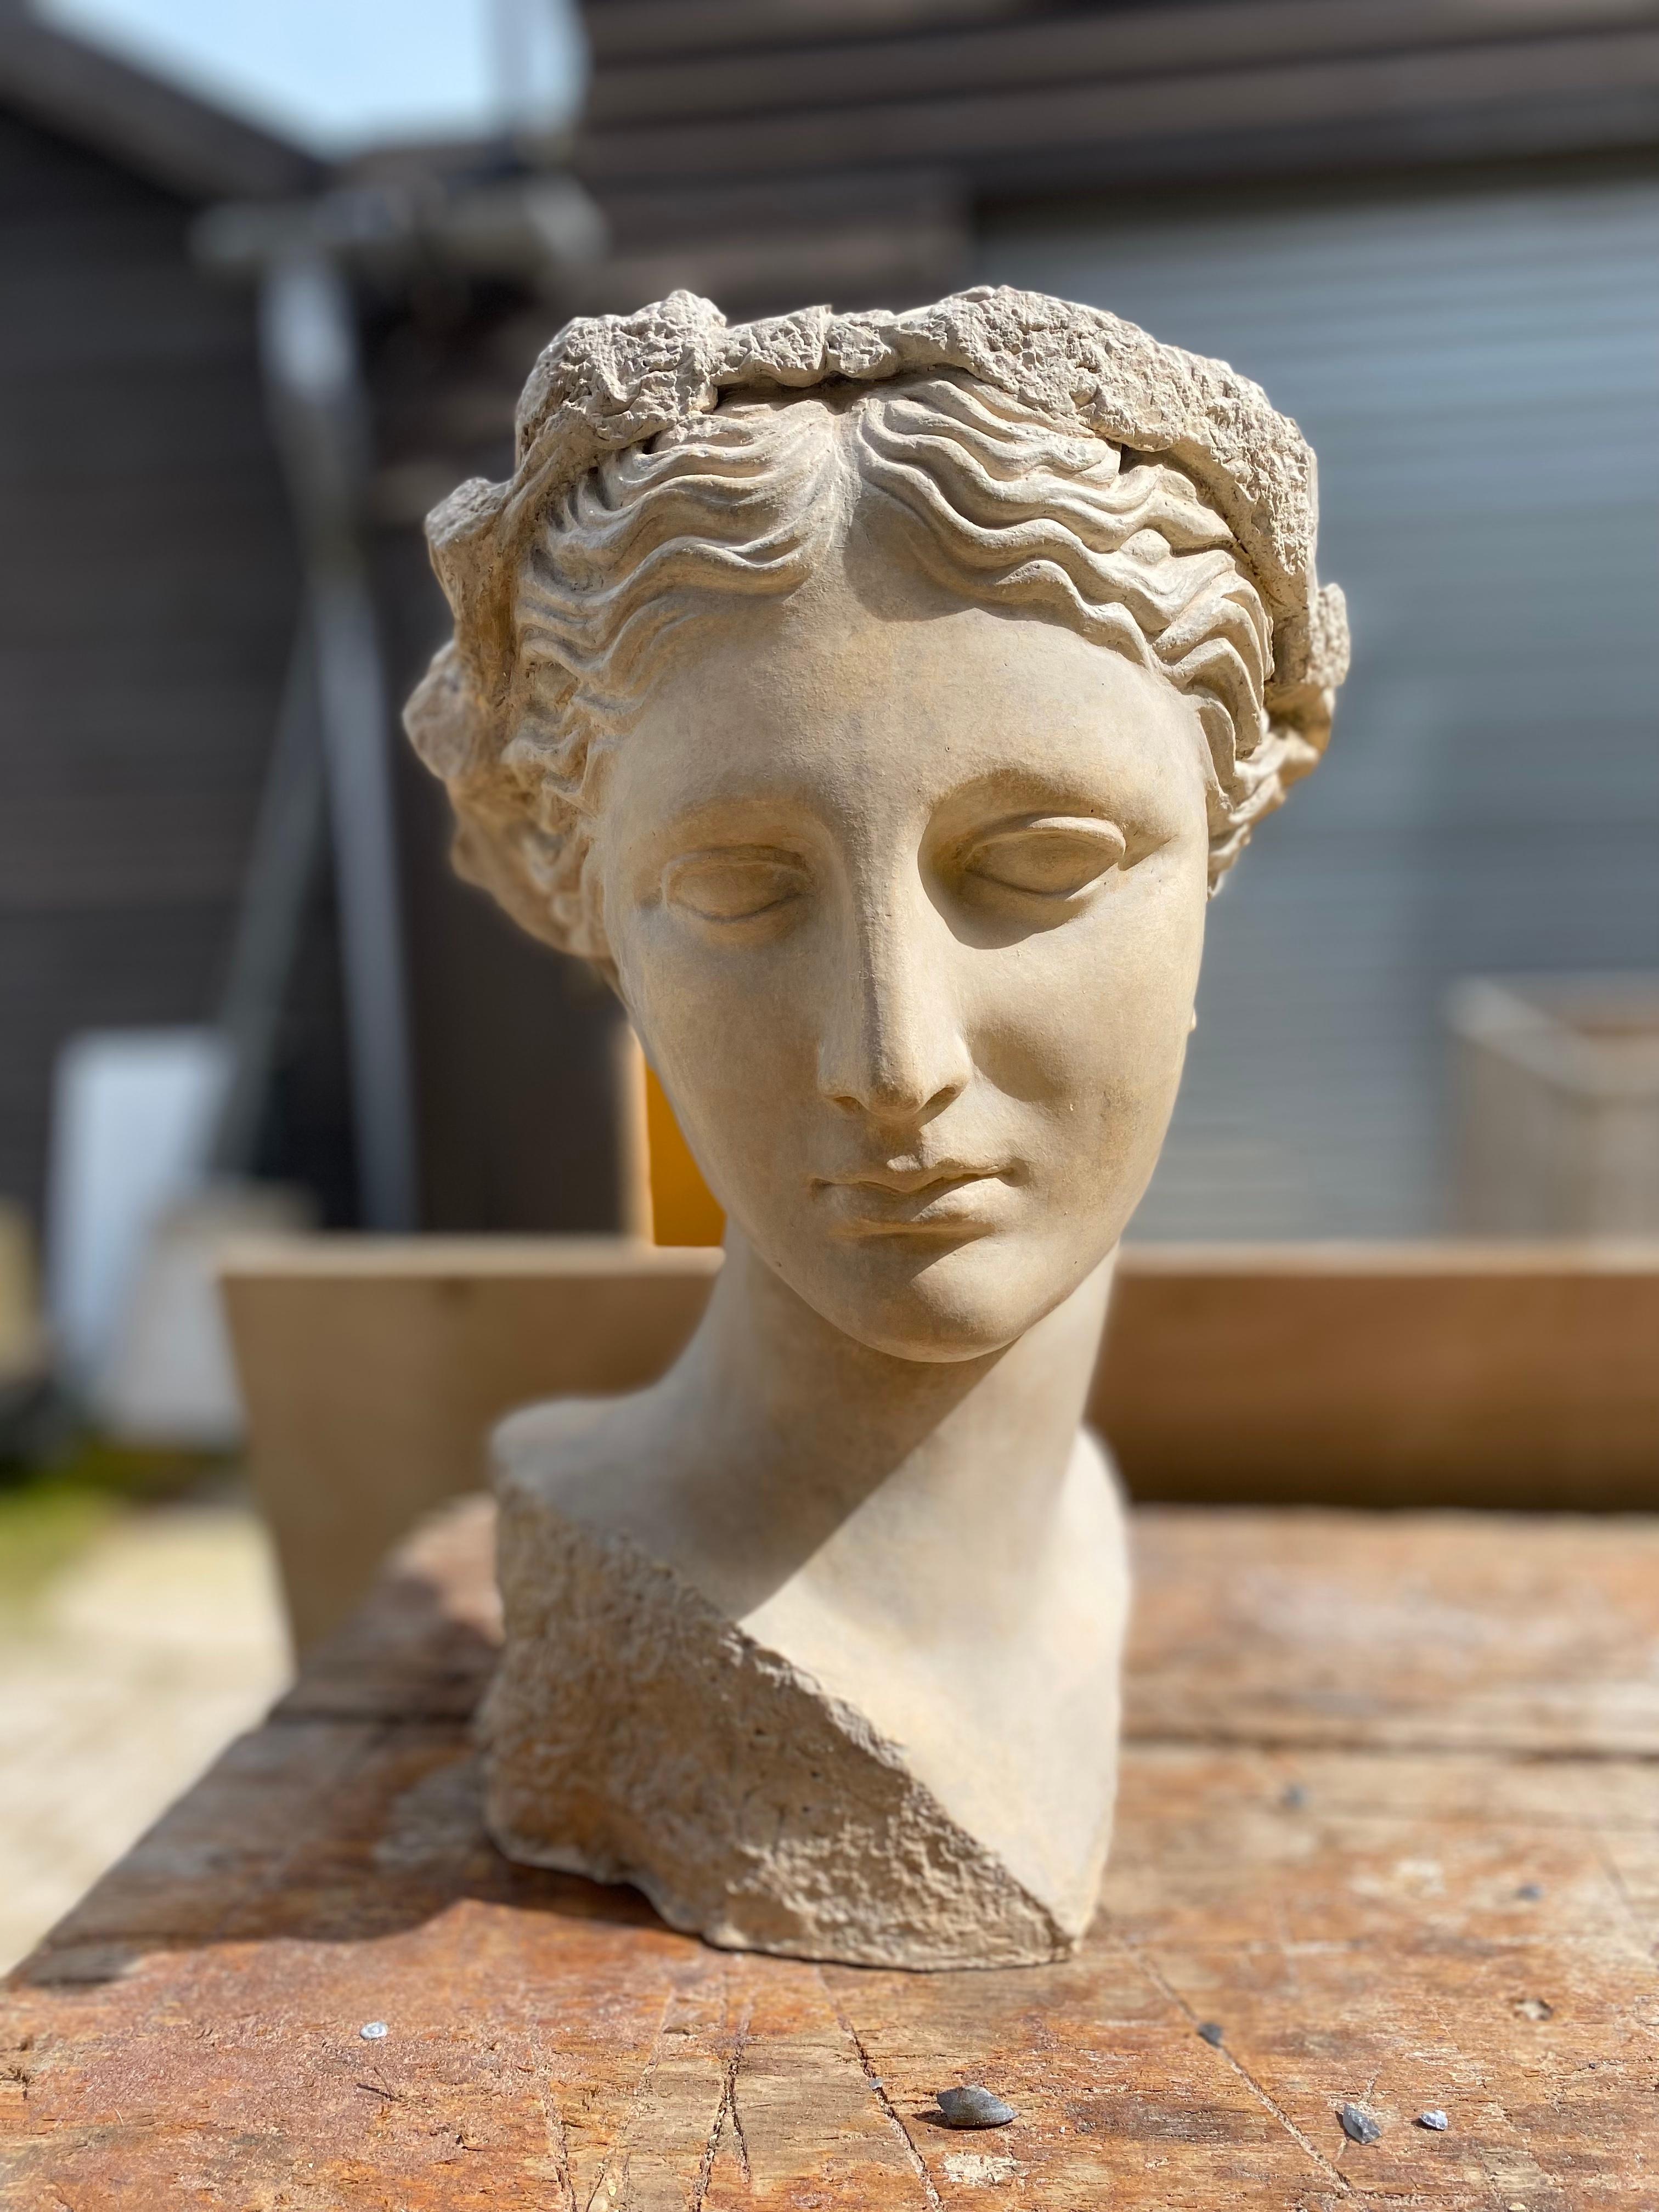 Thalia, eine der drei Grazien, erscheint häufig zusammen mit ihren Schwestern in klassizistischen Skulpturen. Sie ist bekannt dafür, dass sie Jugend und Schönheit symbolisiert.

Der Coade-Kopf der Thalia ist von einer römischen Büste aus dem 2.